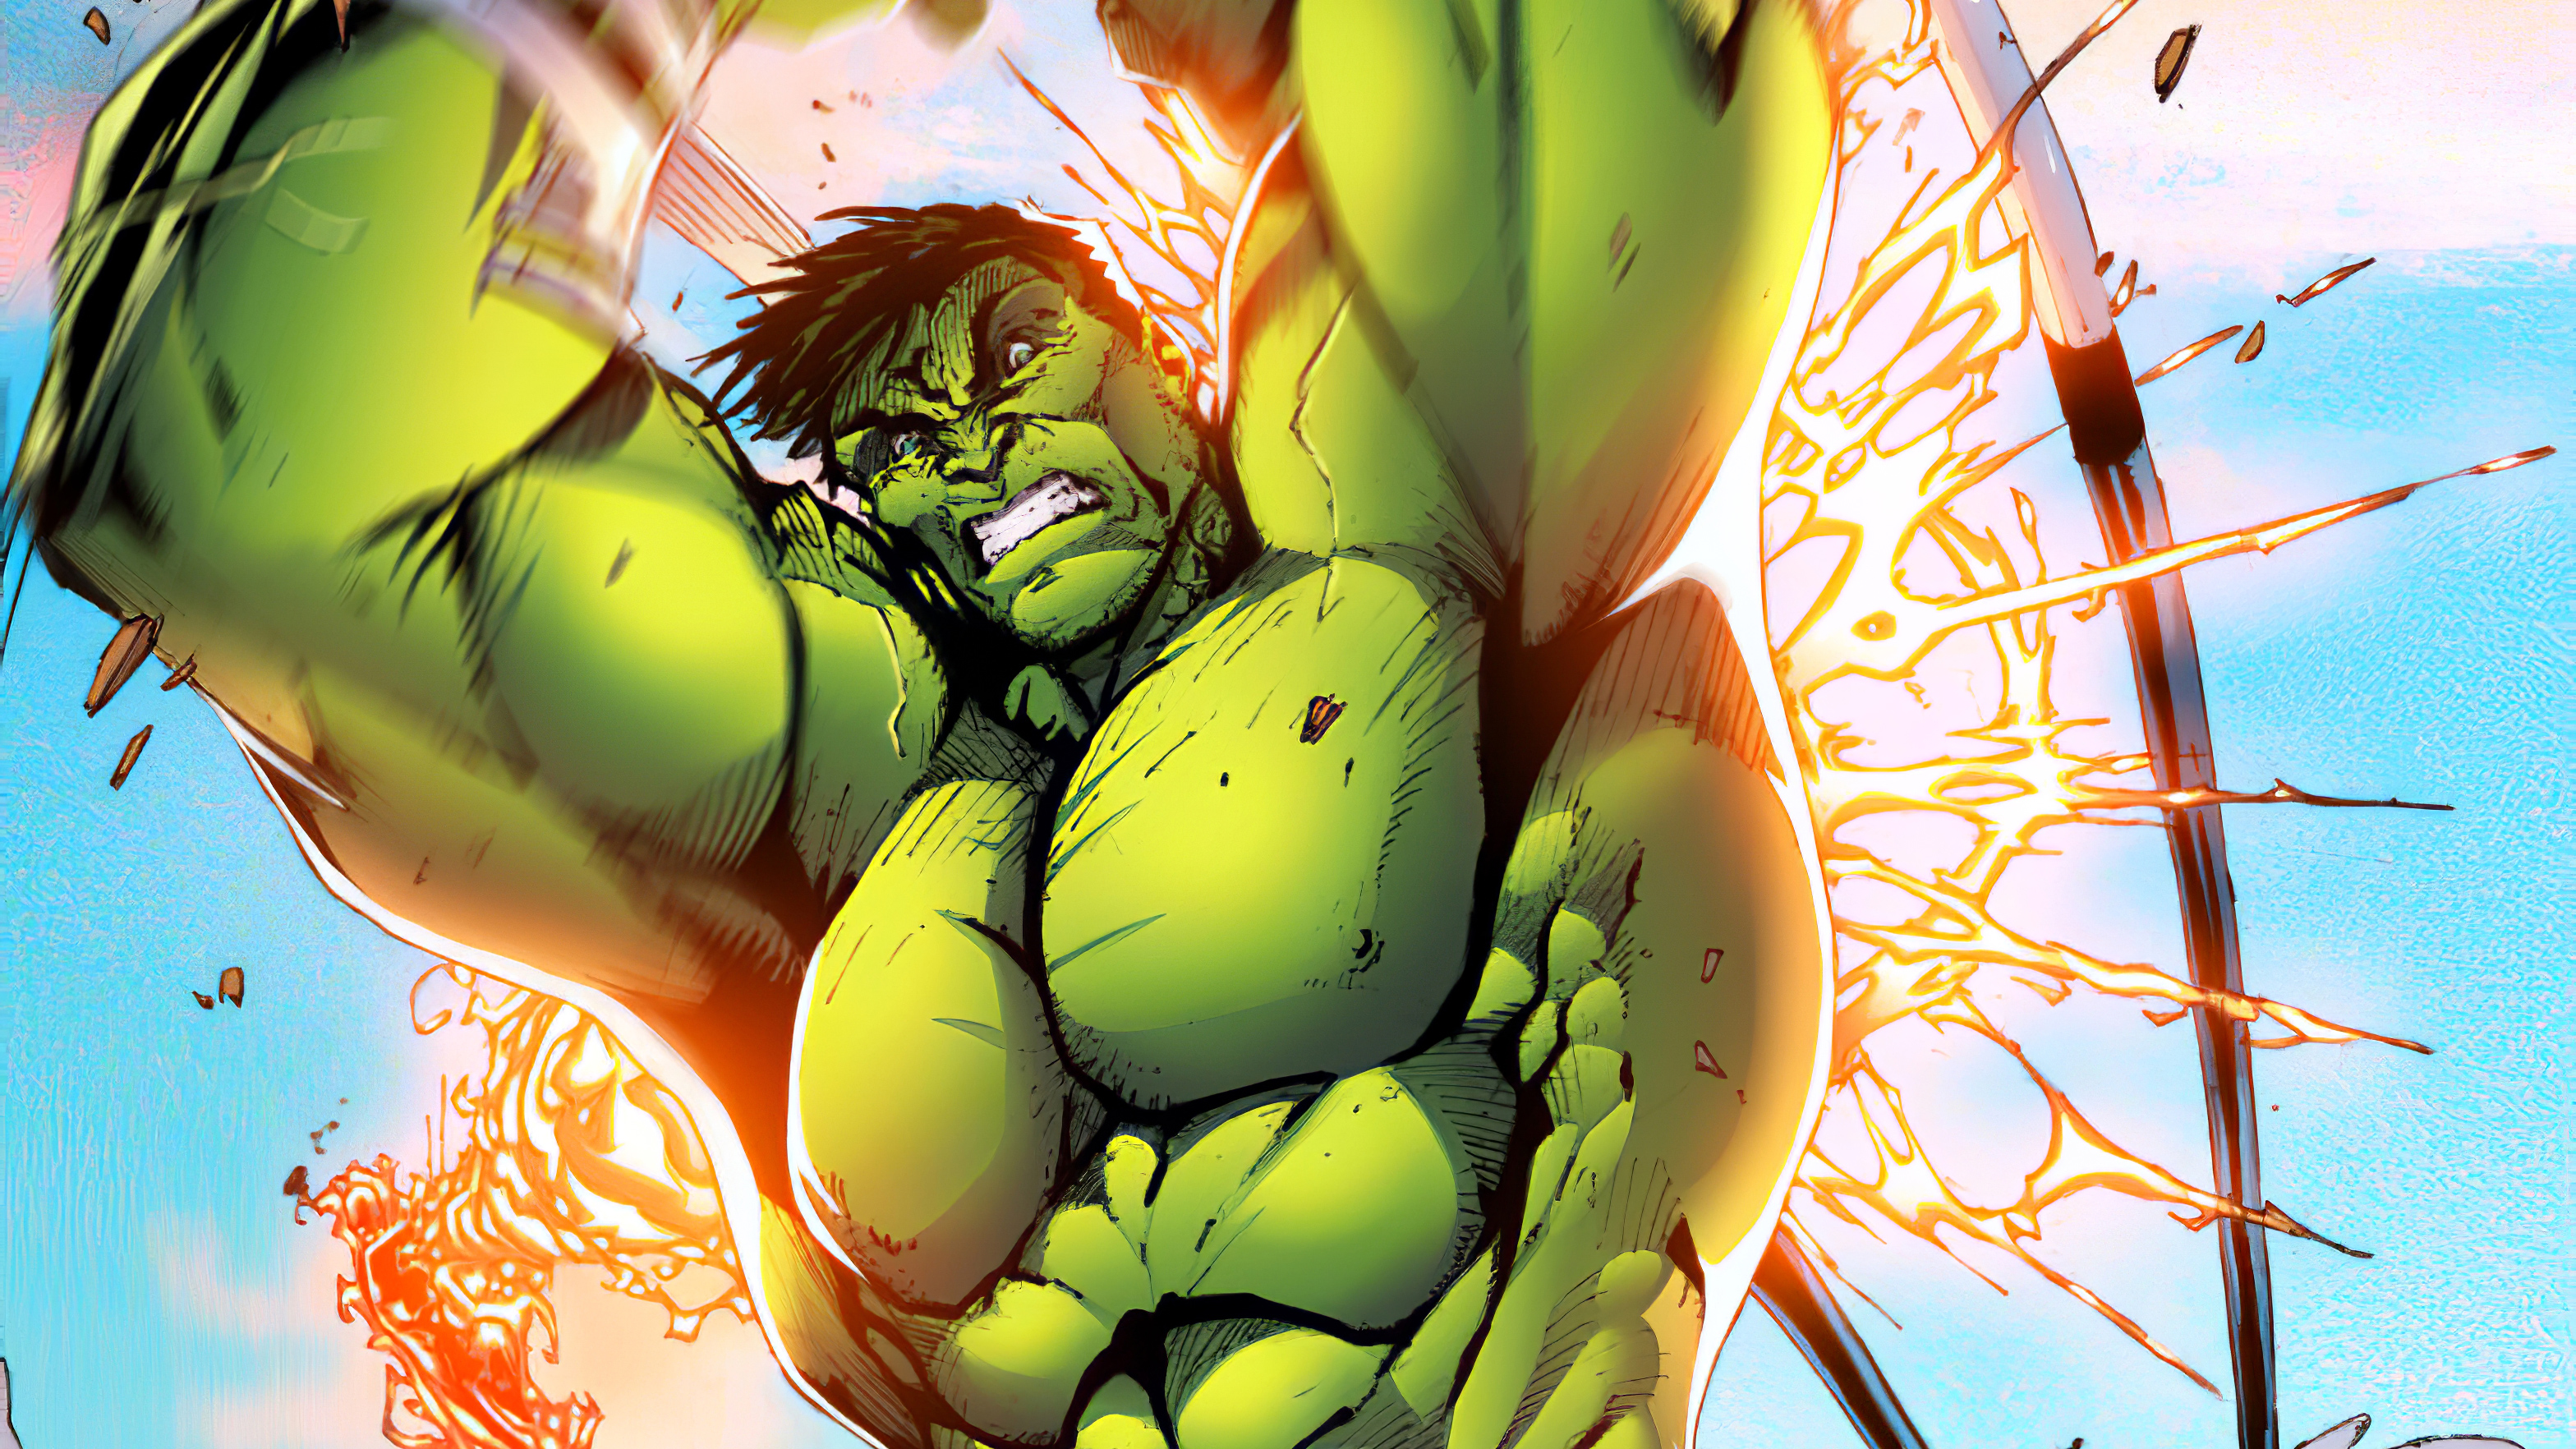 Hulk Smash 4K Wallpapers.